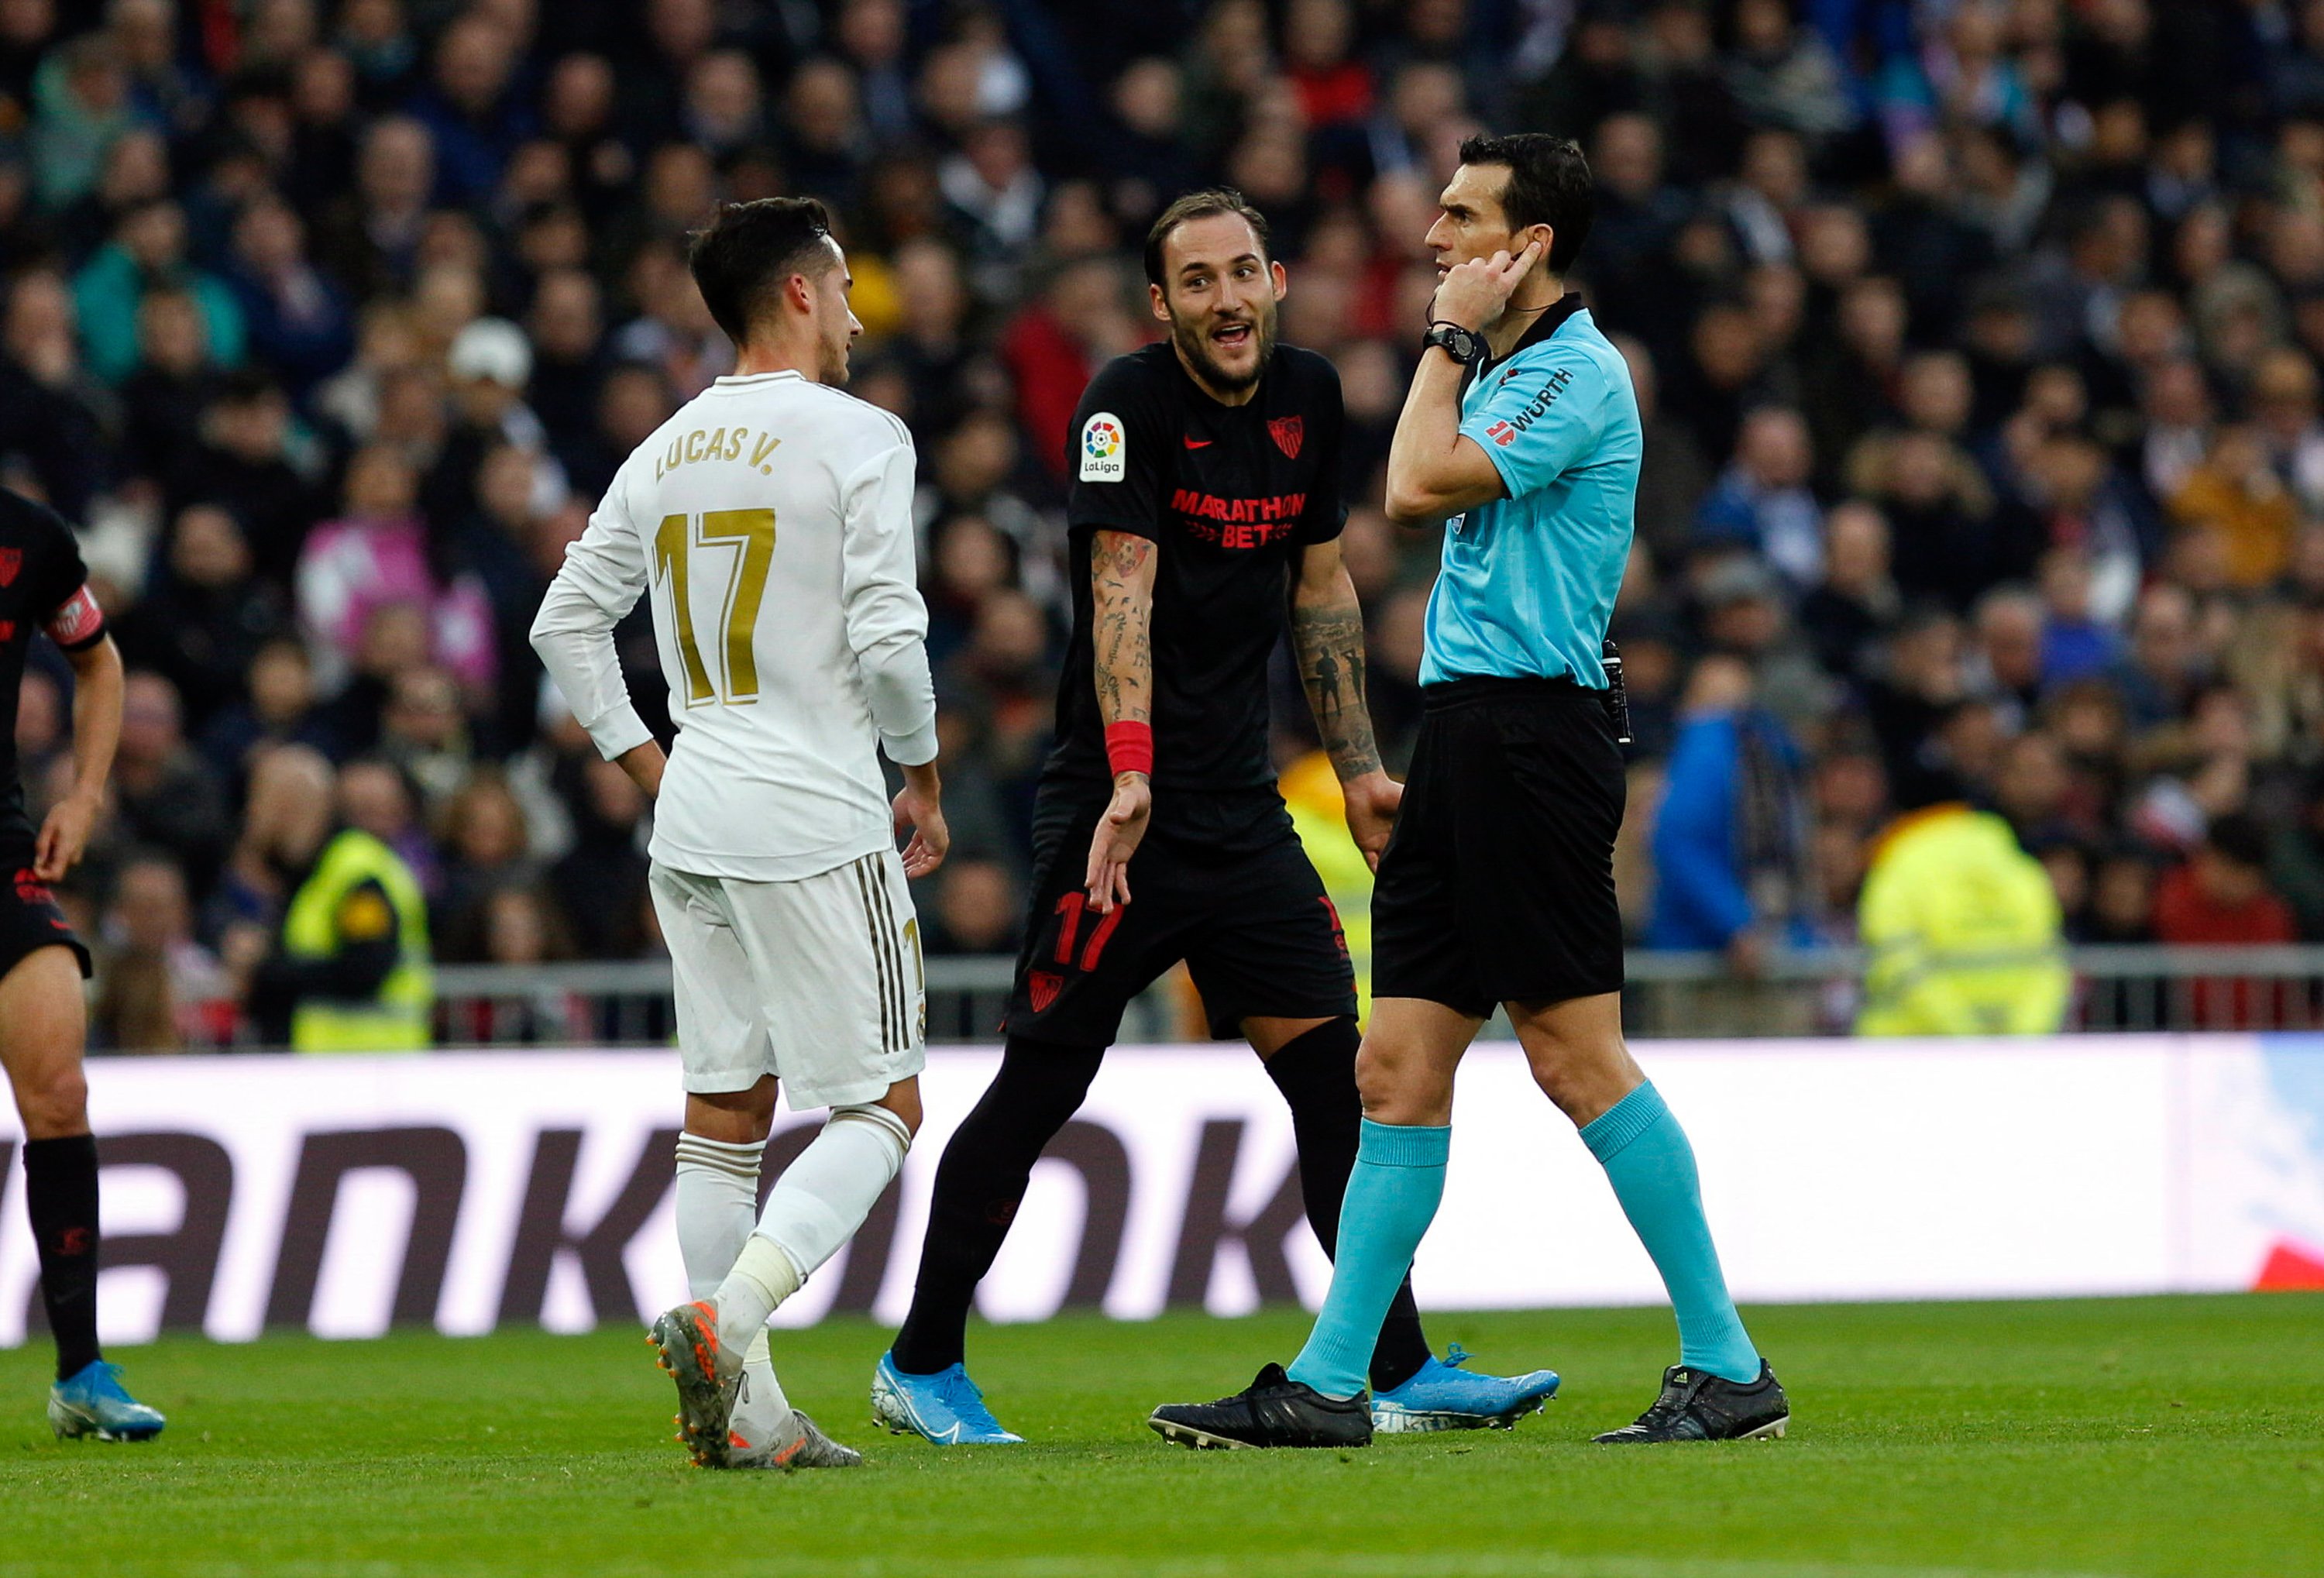 La provocadora designació arbitral per al Reial Madrid-Sevilla: sembla una broma